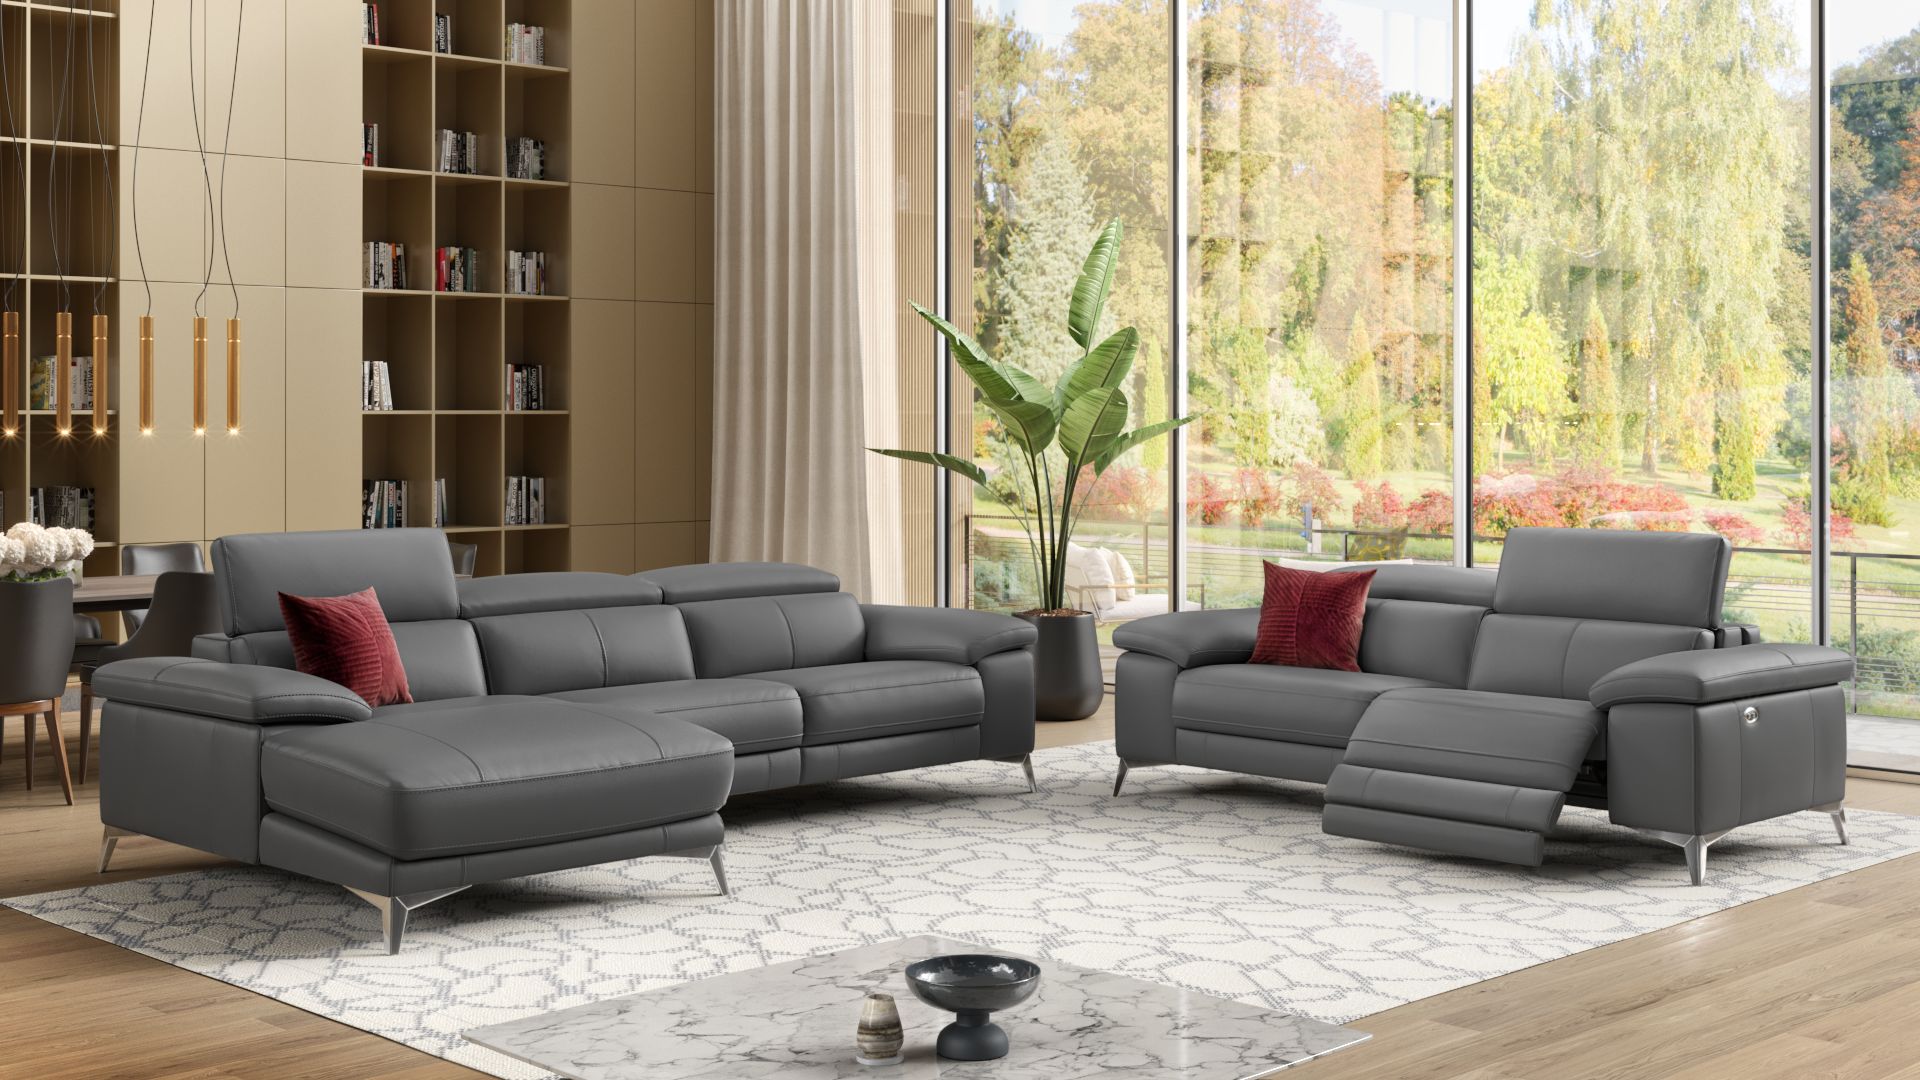 Elektrisch verstellbares sofa - Die TOP Favoriten unter der Menge an verglichenenElektrisch verstellbares sofa!